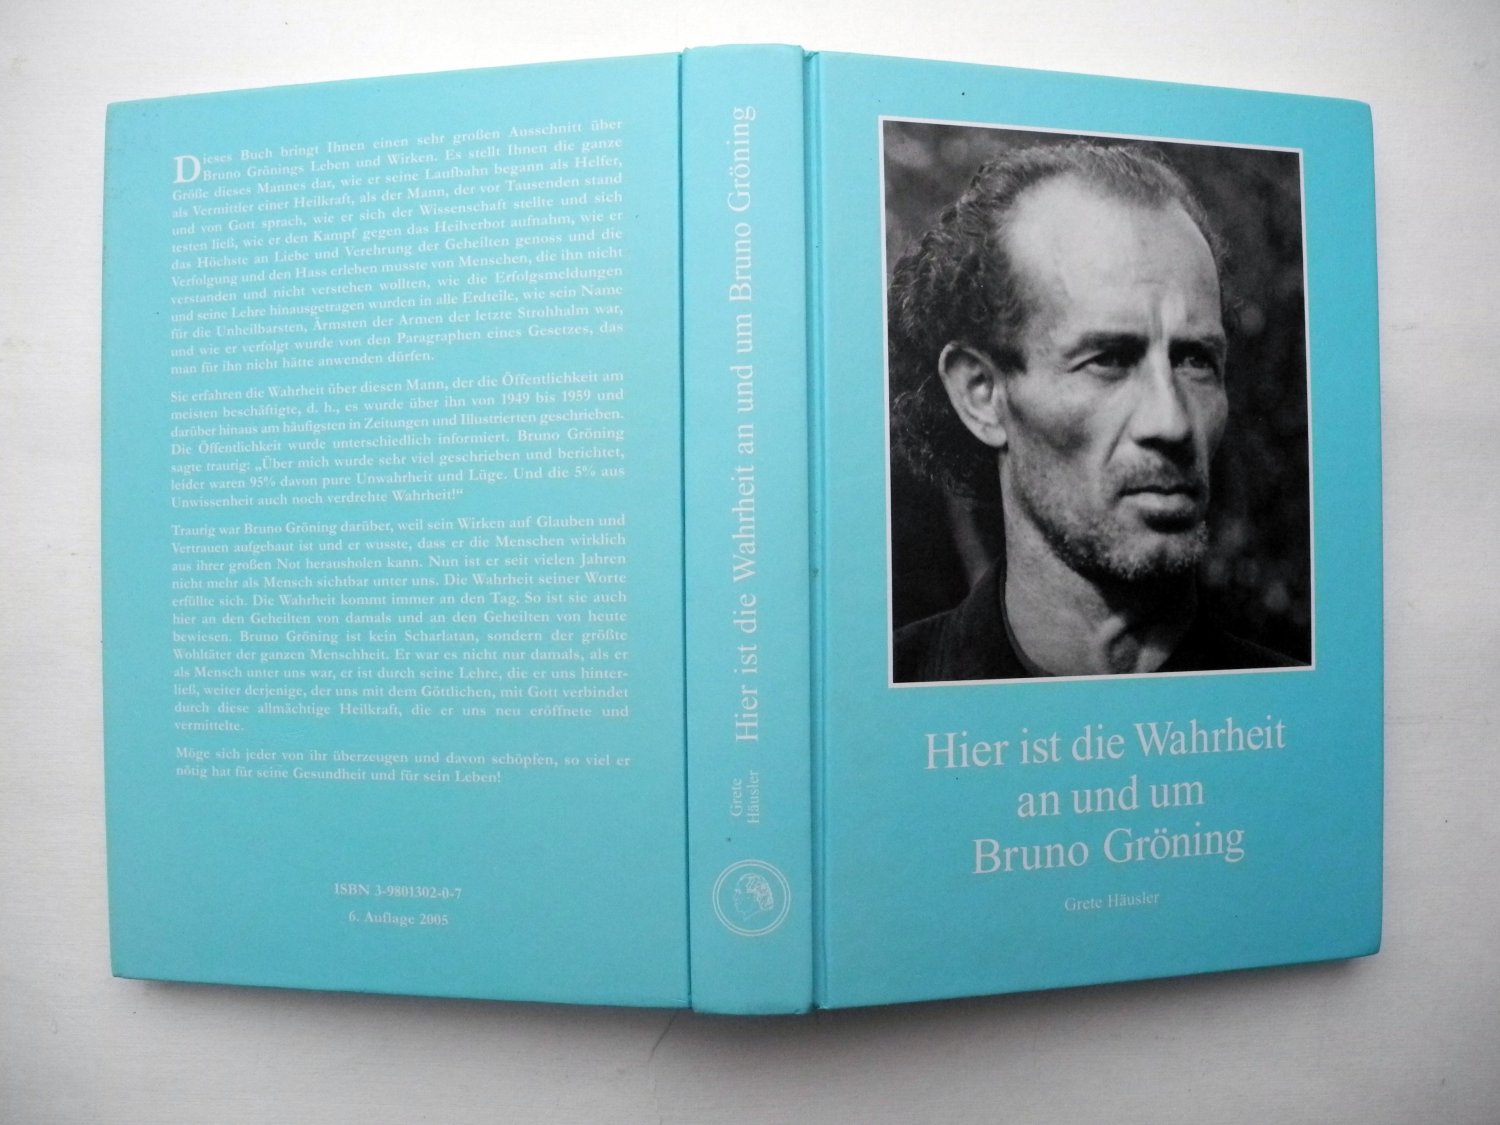 Hier ist die Wahrheit an und um Bruno Gröning - Deutsche …“ (Grete Häusler)  – Buch gebraucht kaufen – A02wSh8O01ZZo